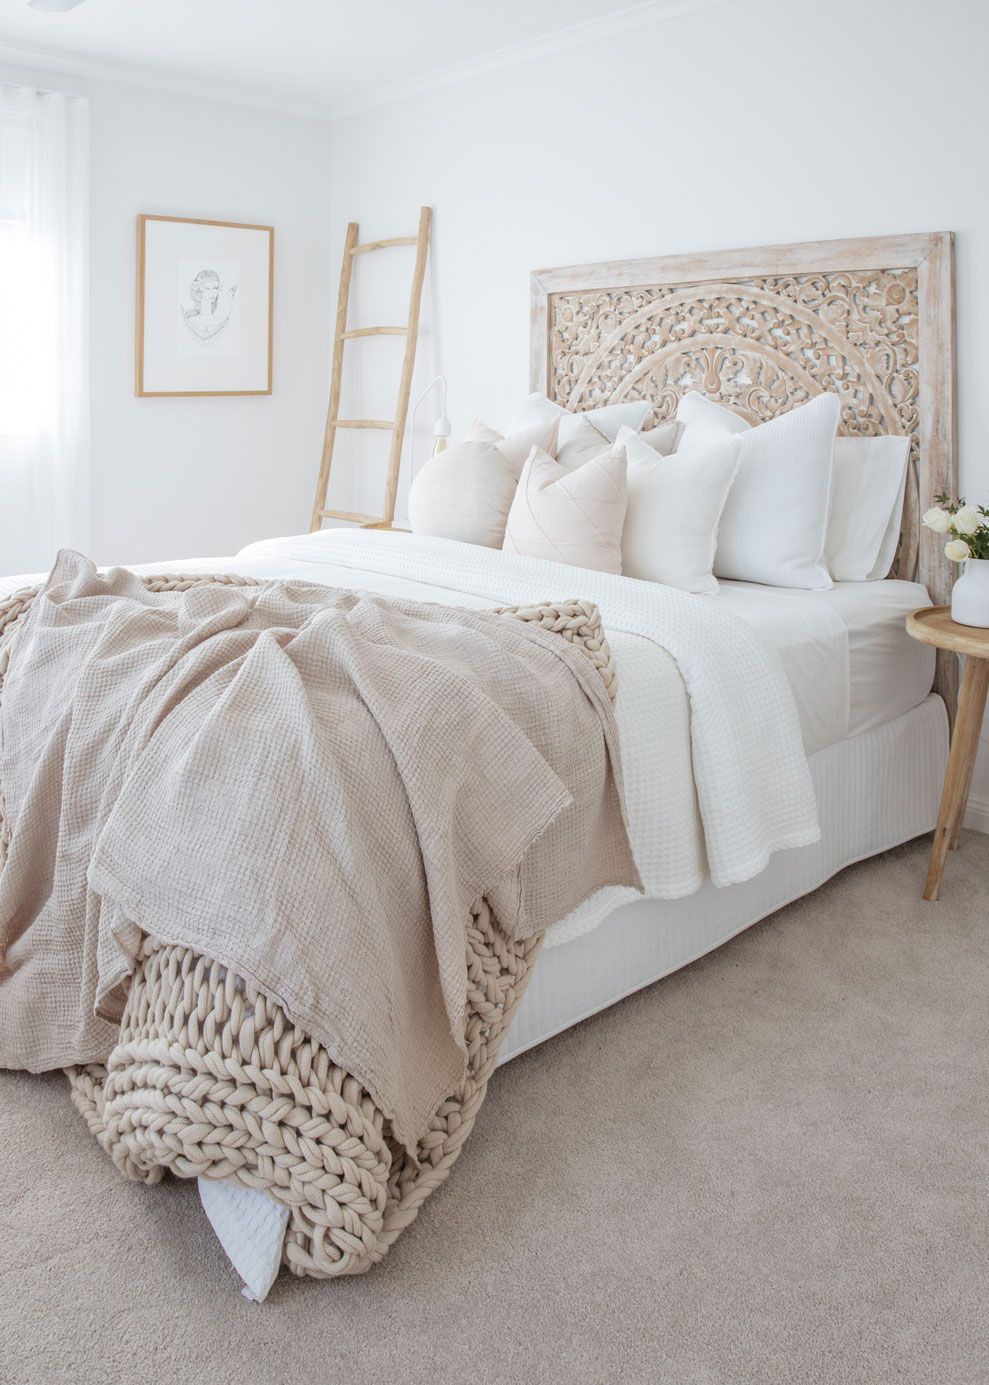 Khéo đưa phong cách nội thất Zen đậm chất thiền Nhật Bản vào phòng ngủ với những mẹo thiết kế cực hay - Ảnh 4.